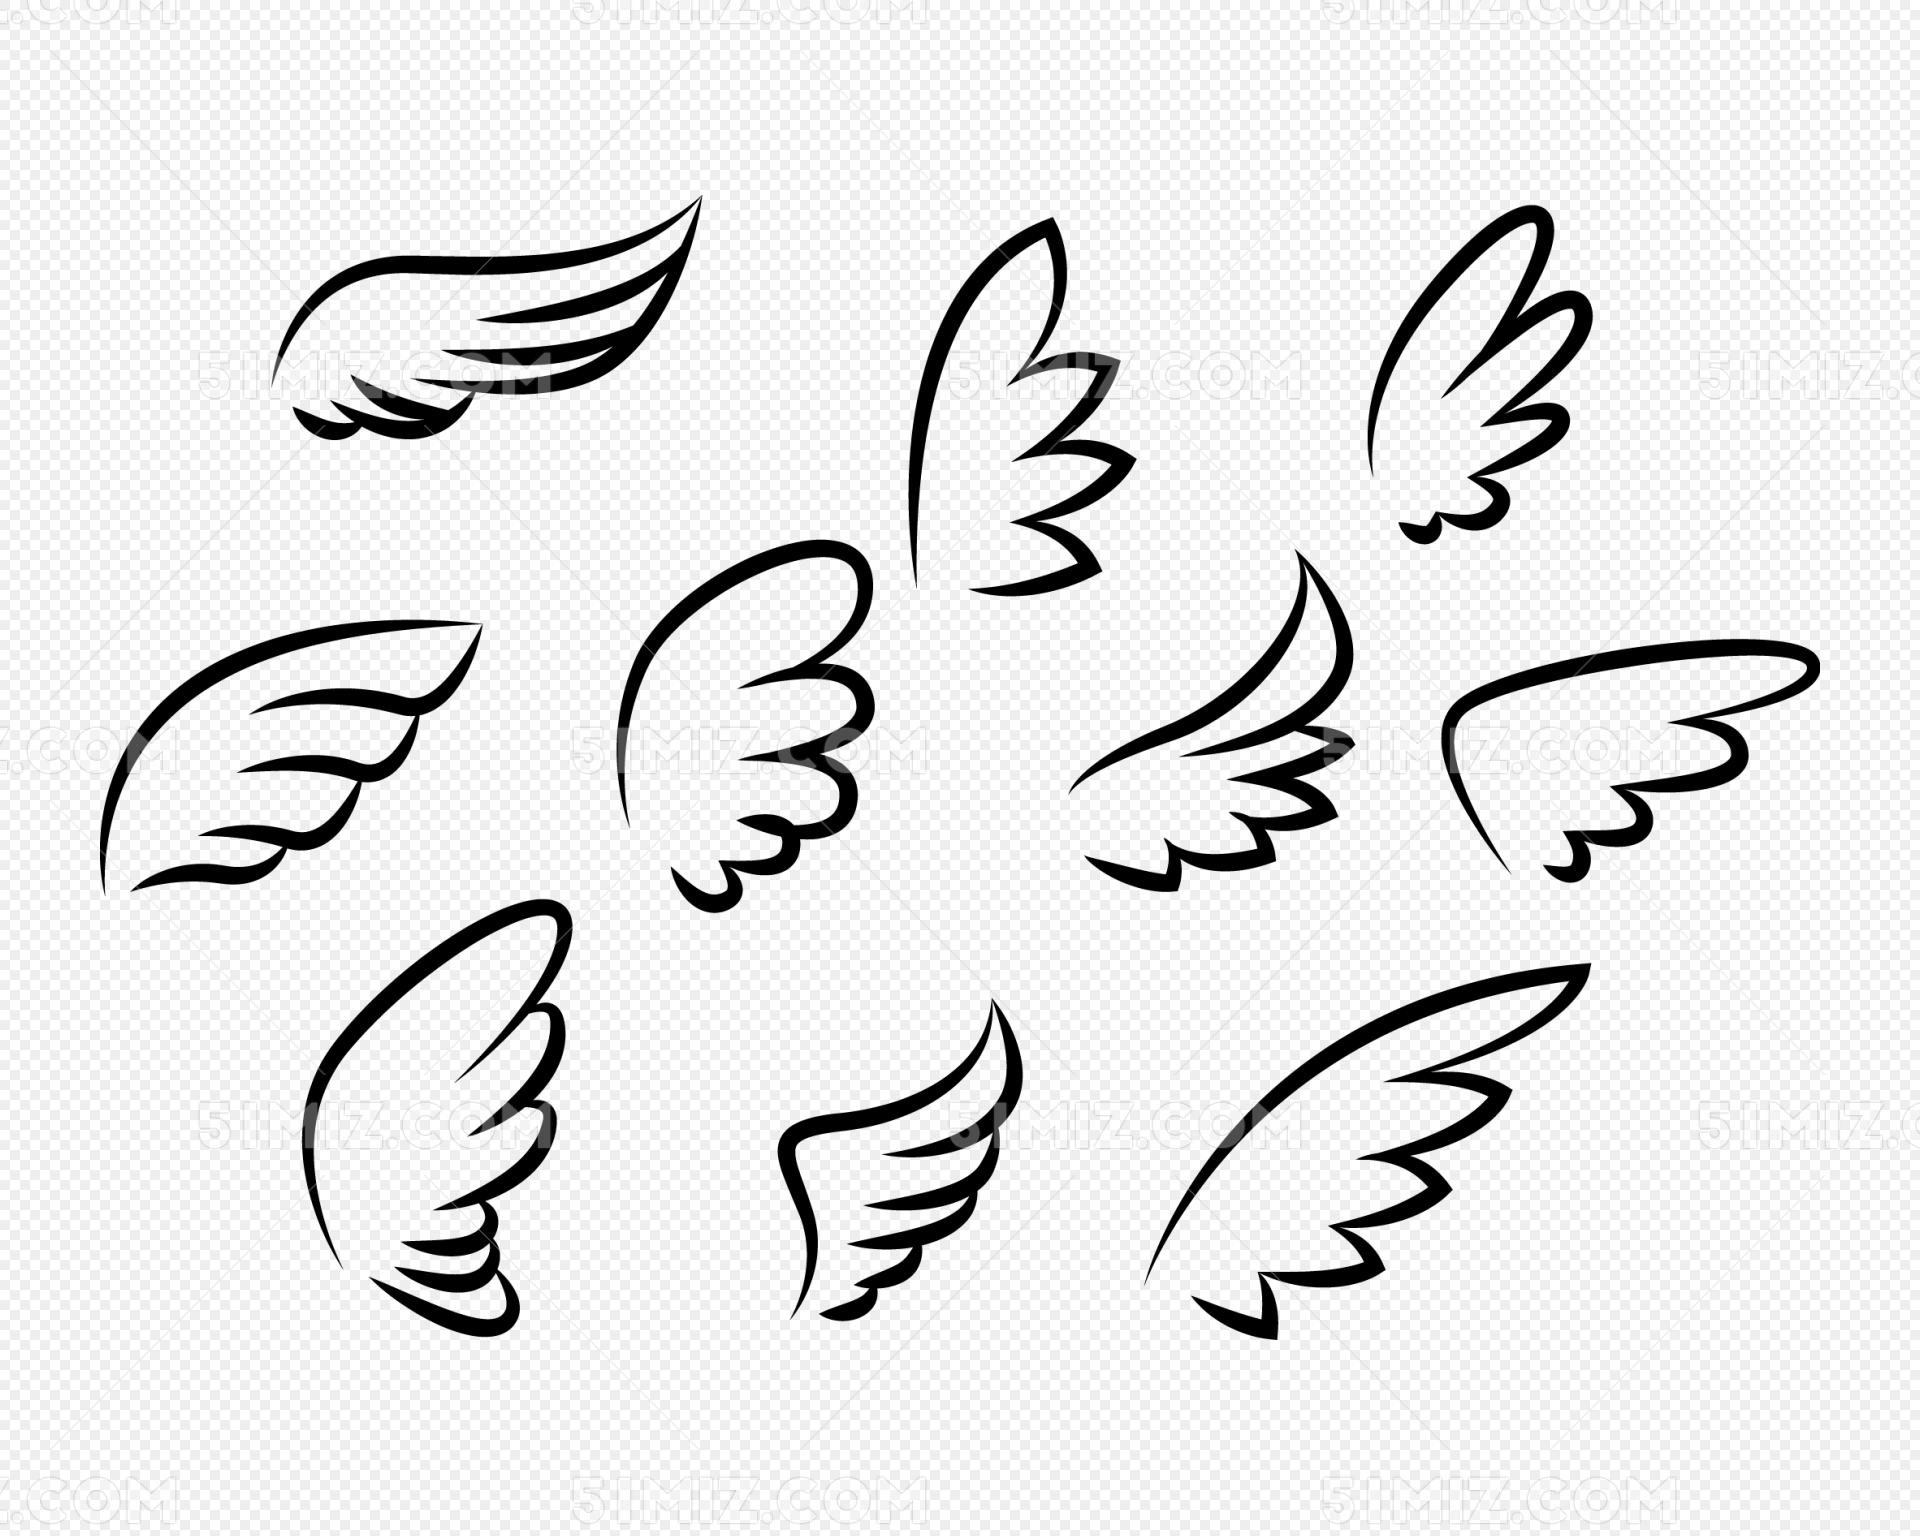 大天使翅膀画法教程 - 优动漫 动漫创作支援平台